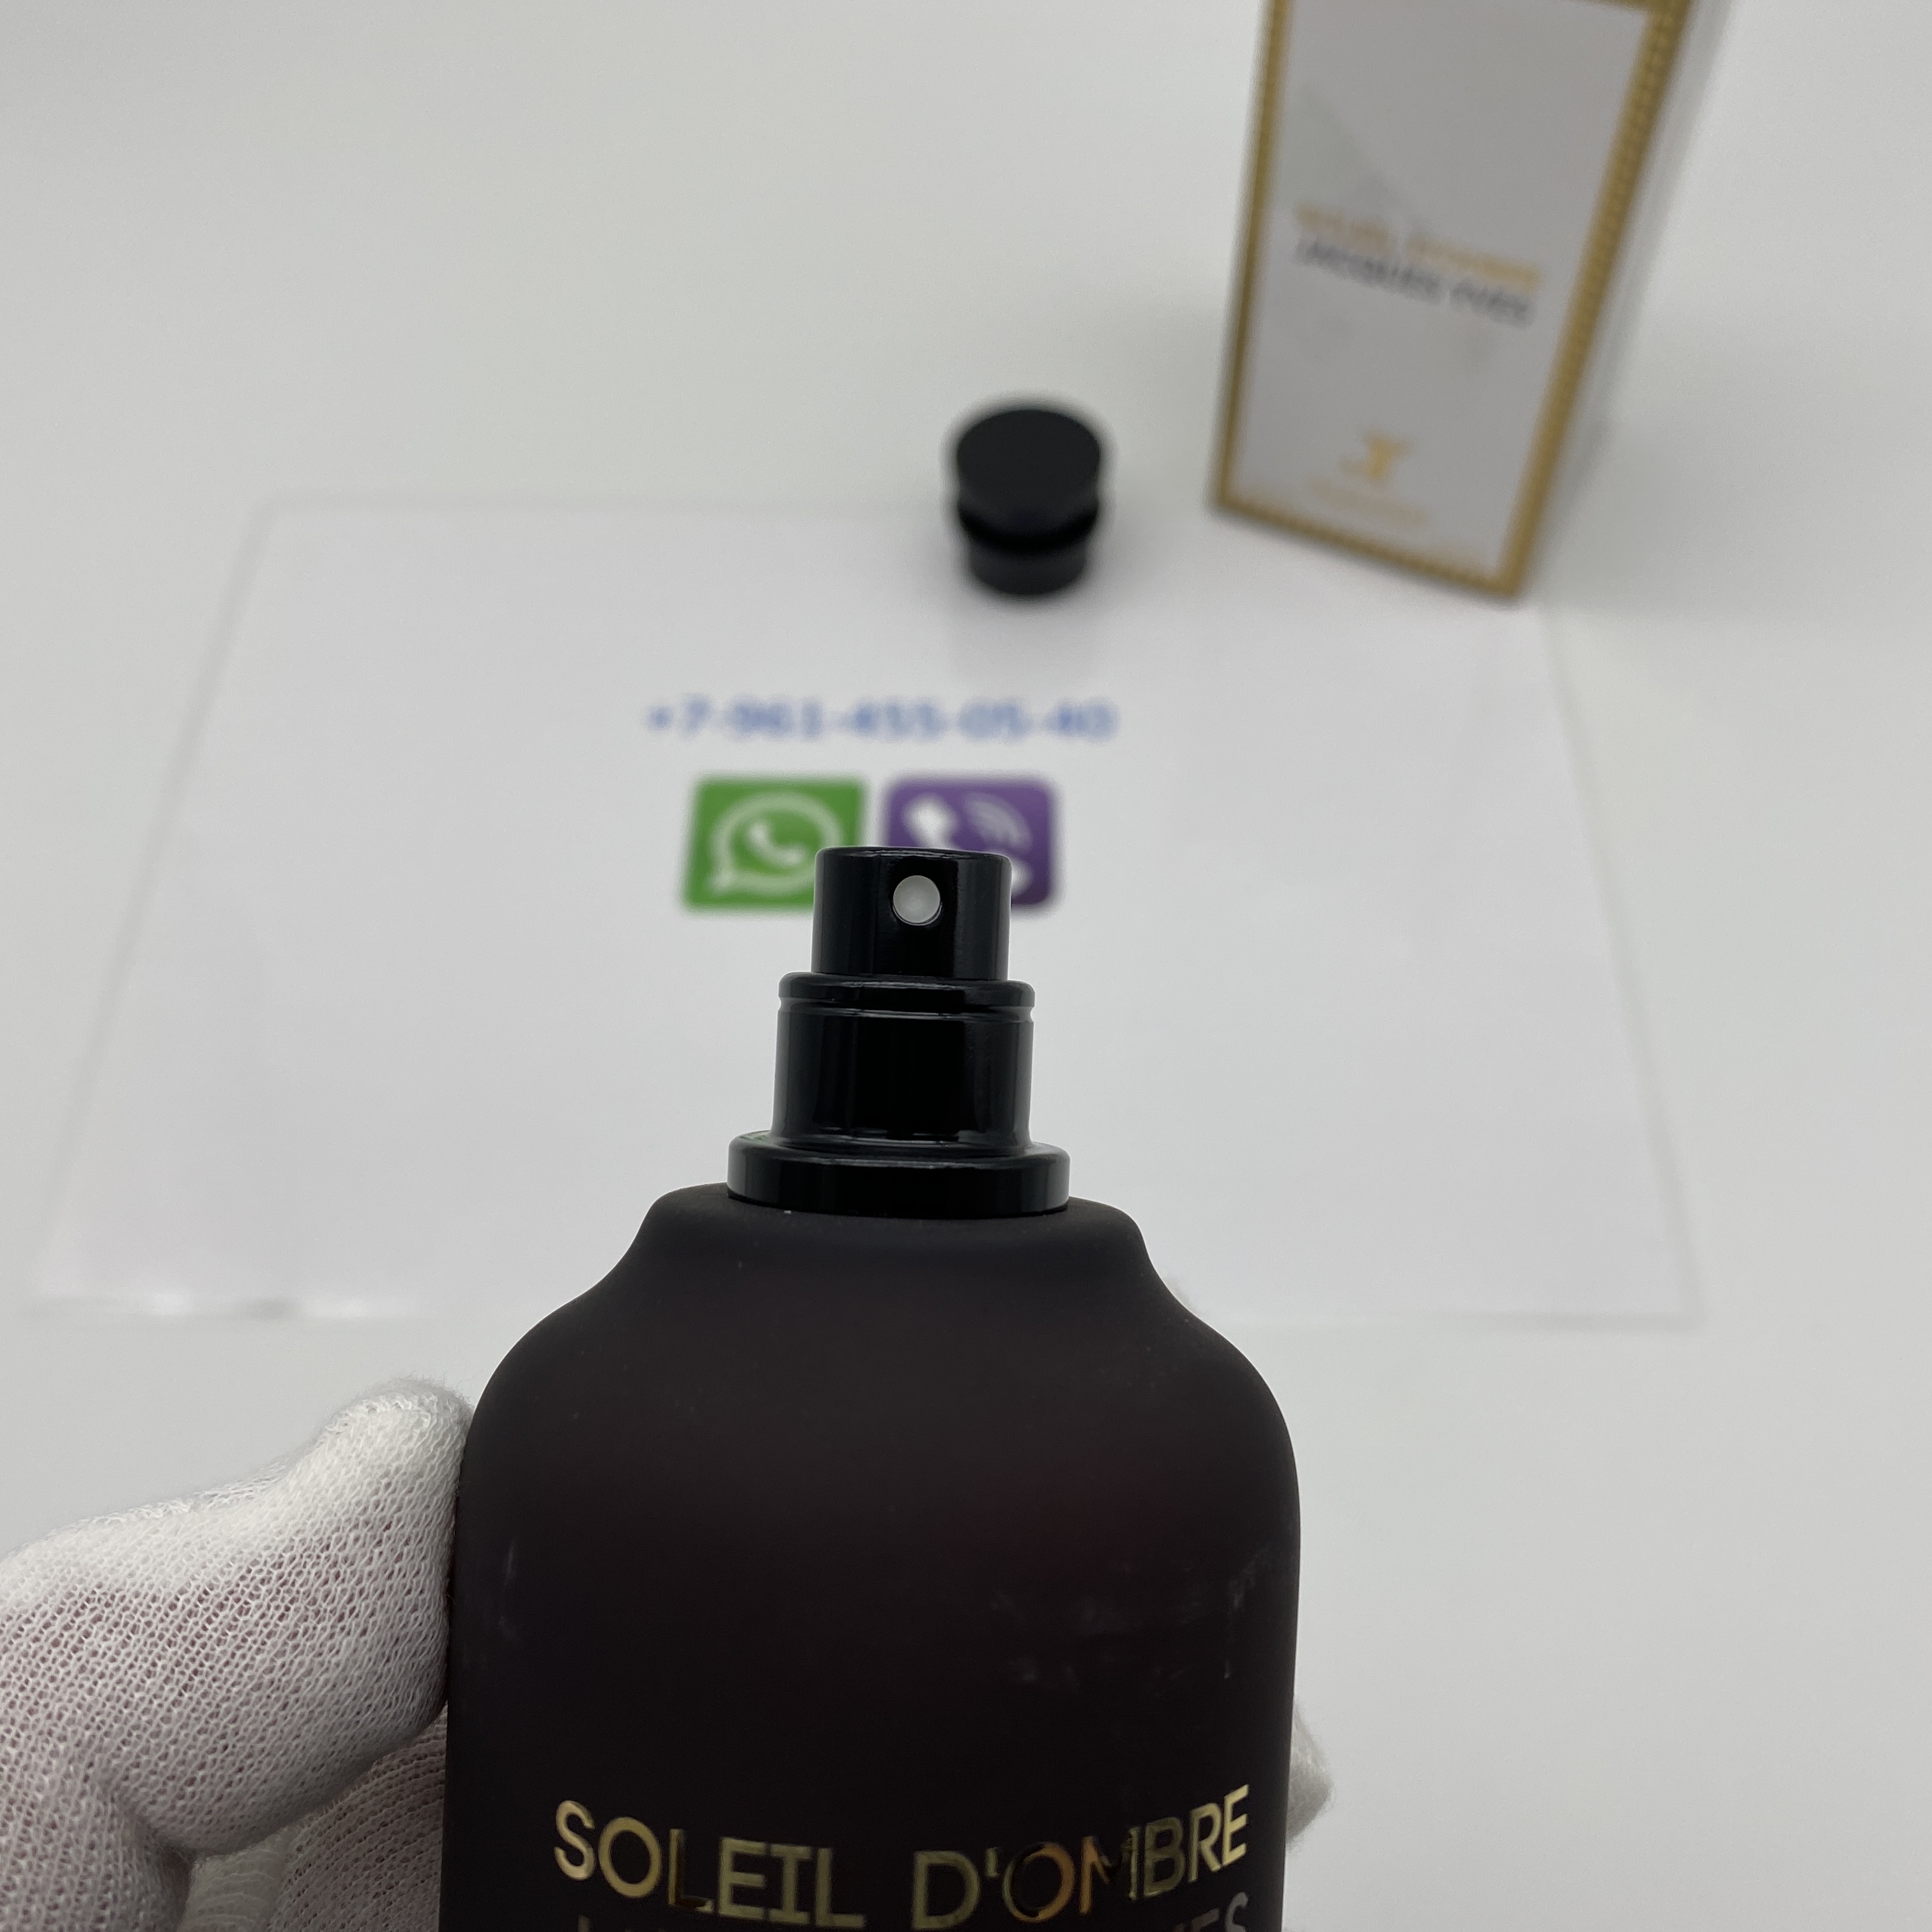 Soleil D'Ombre ▷ (Louis Vuitton Ombre Nomade) ▷ Arabisk parfym 🥇 100ml